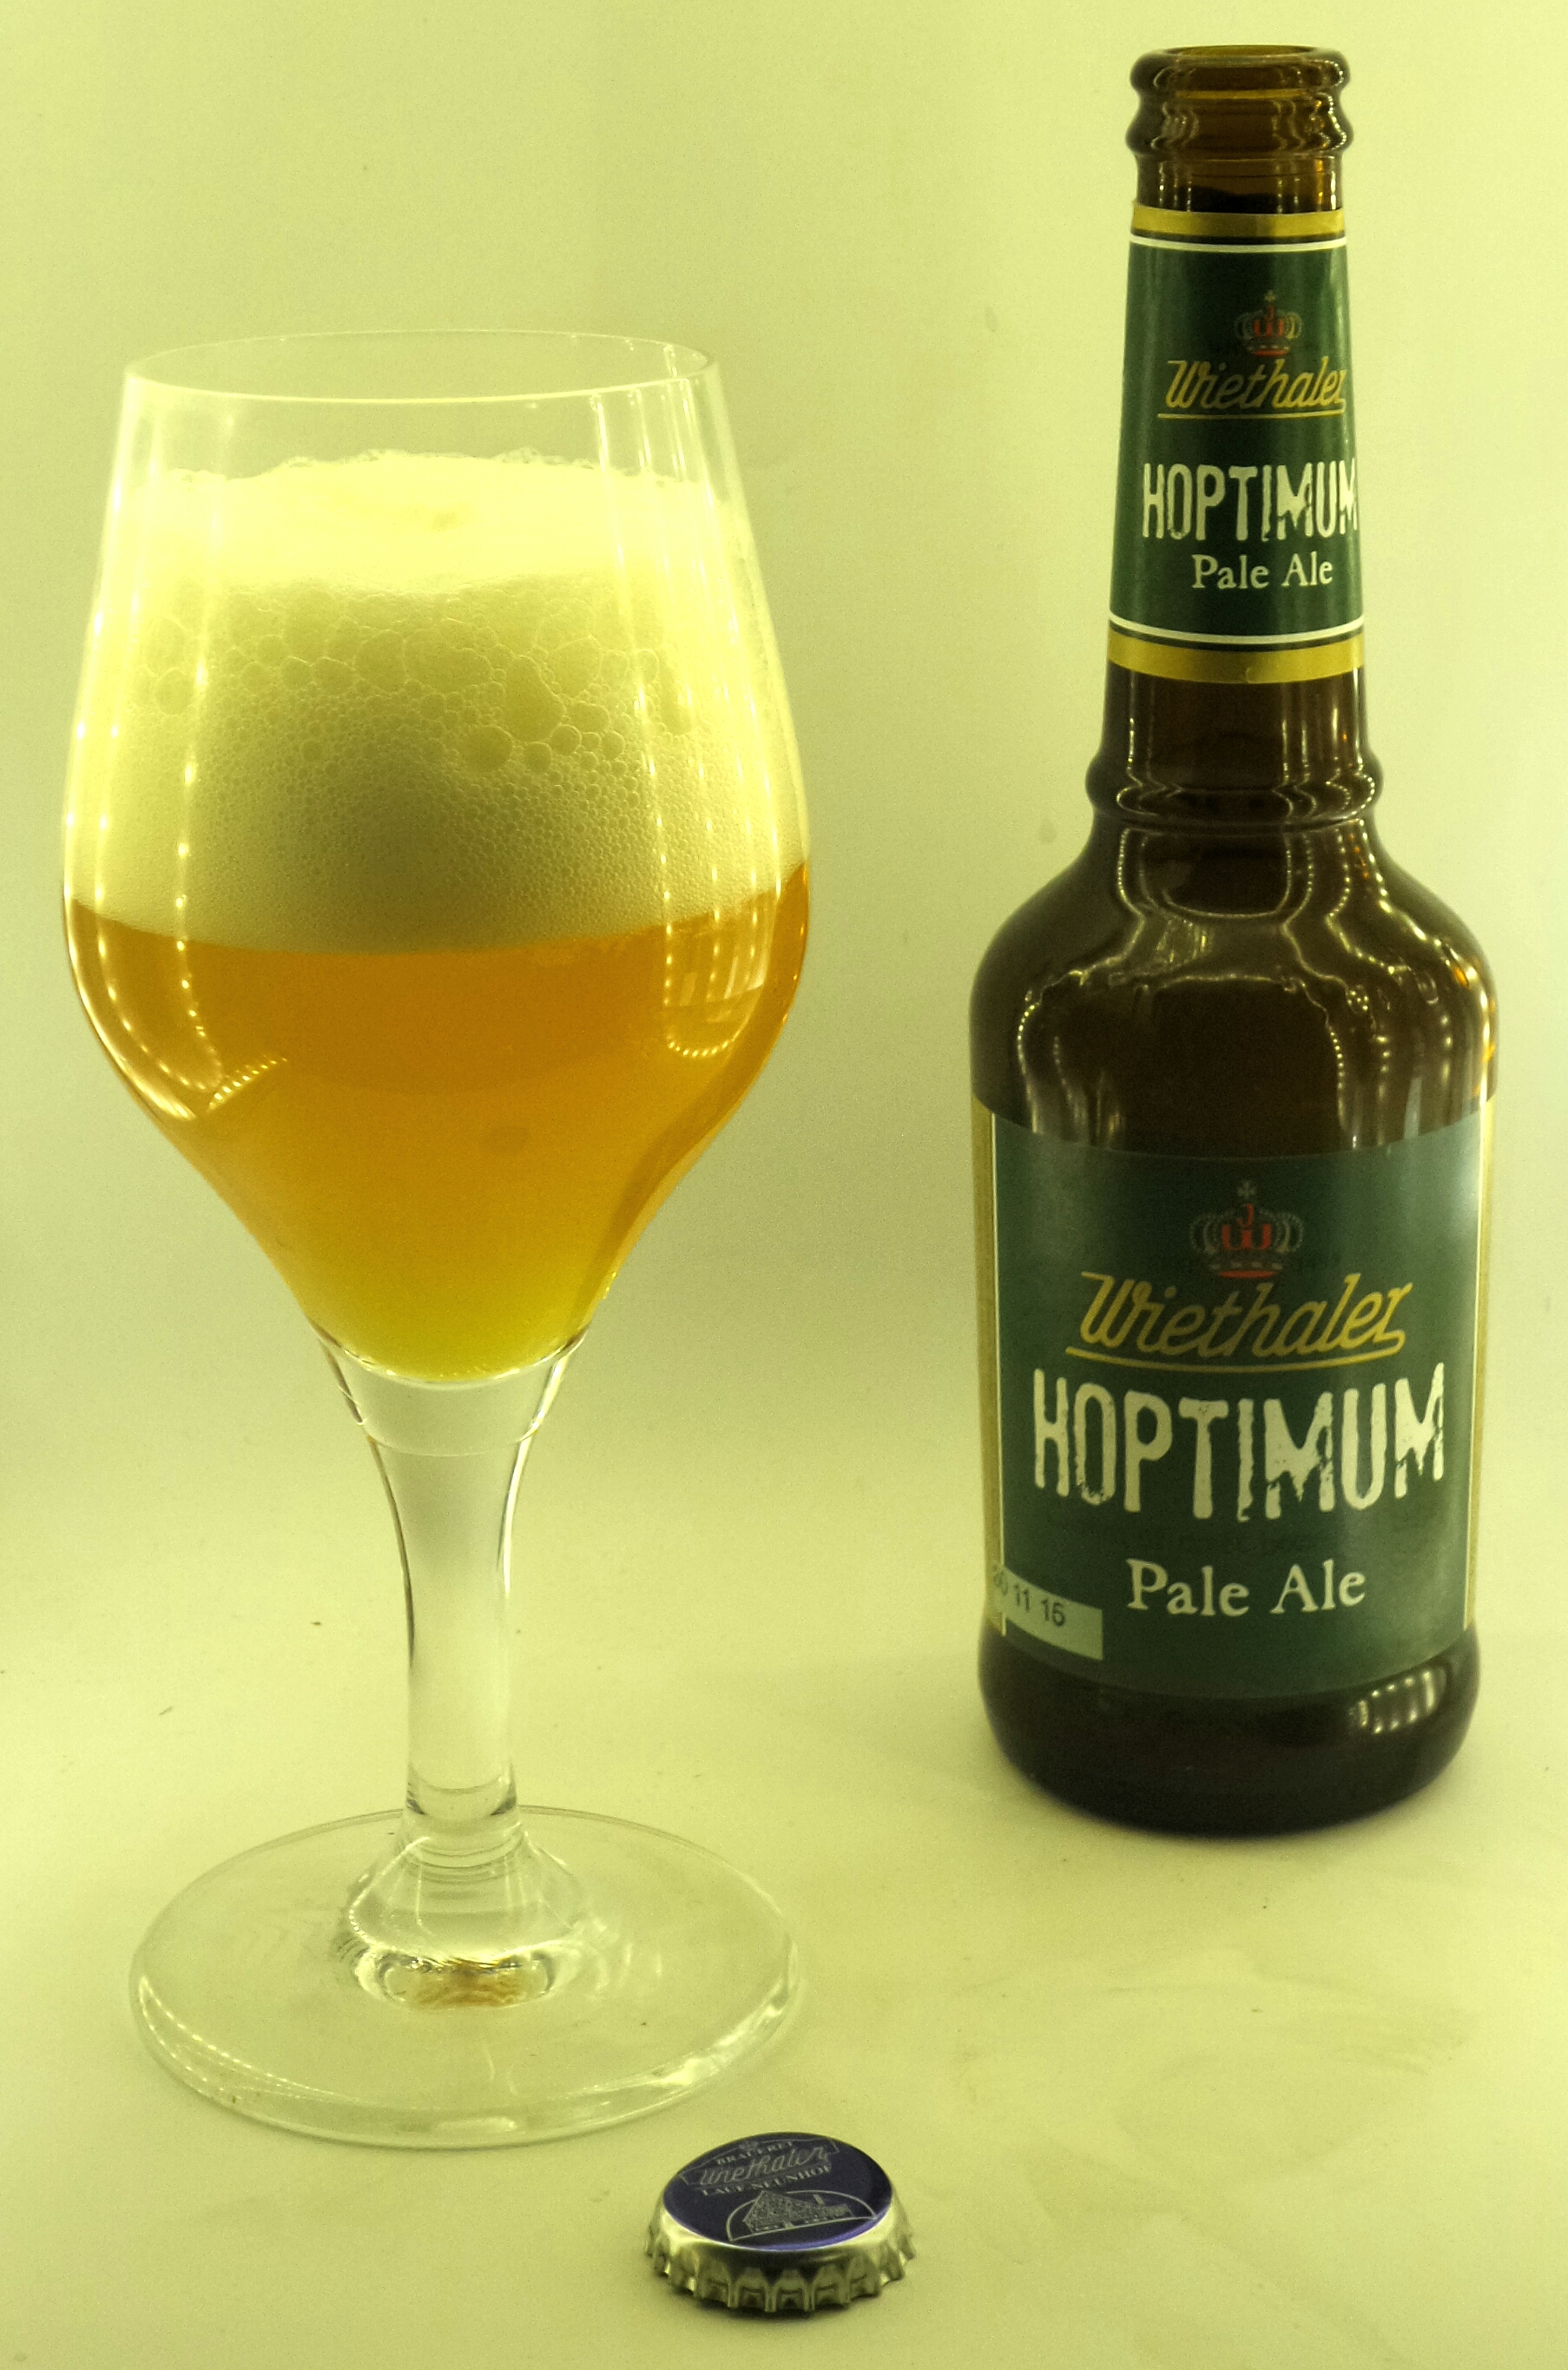 Wiethaler Hoptimum Pale Ale